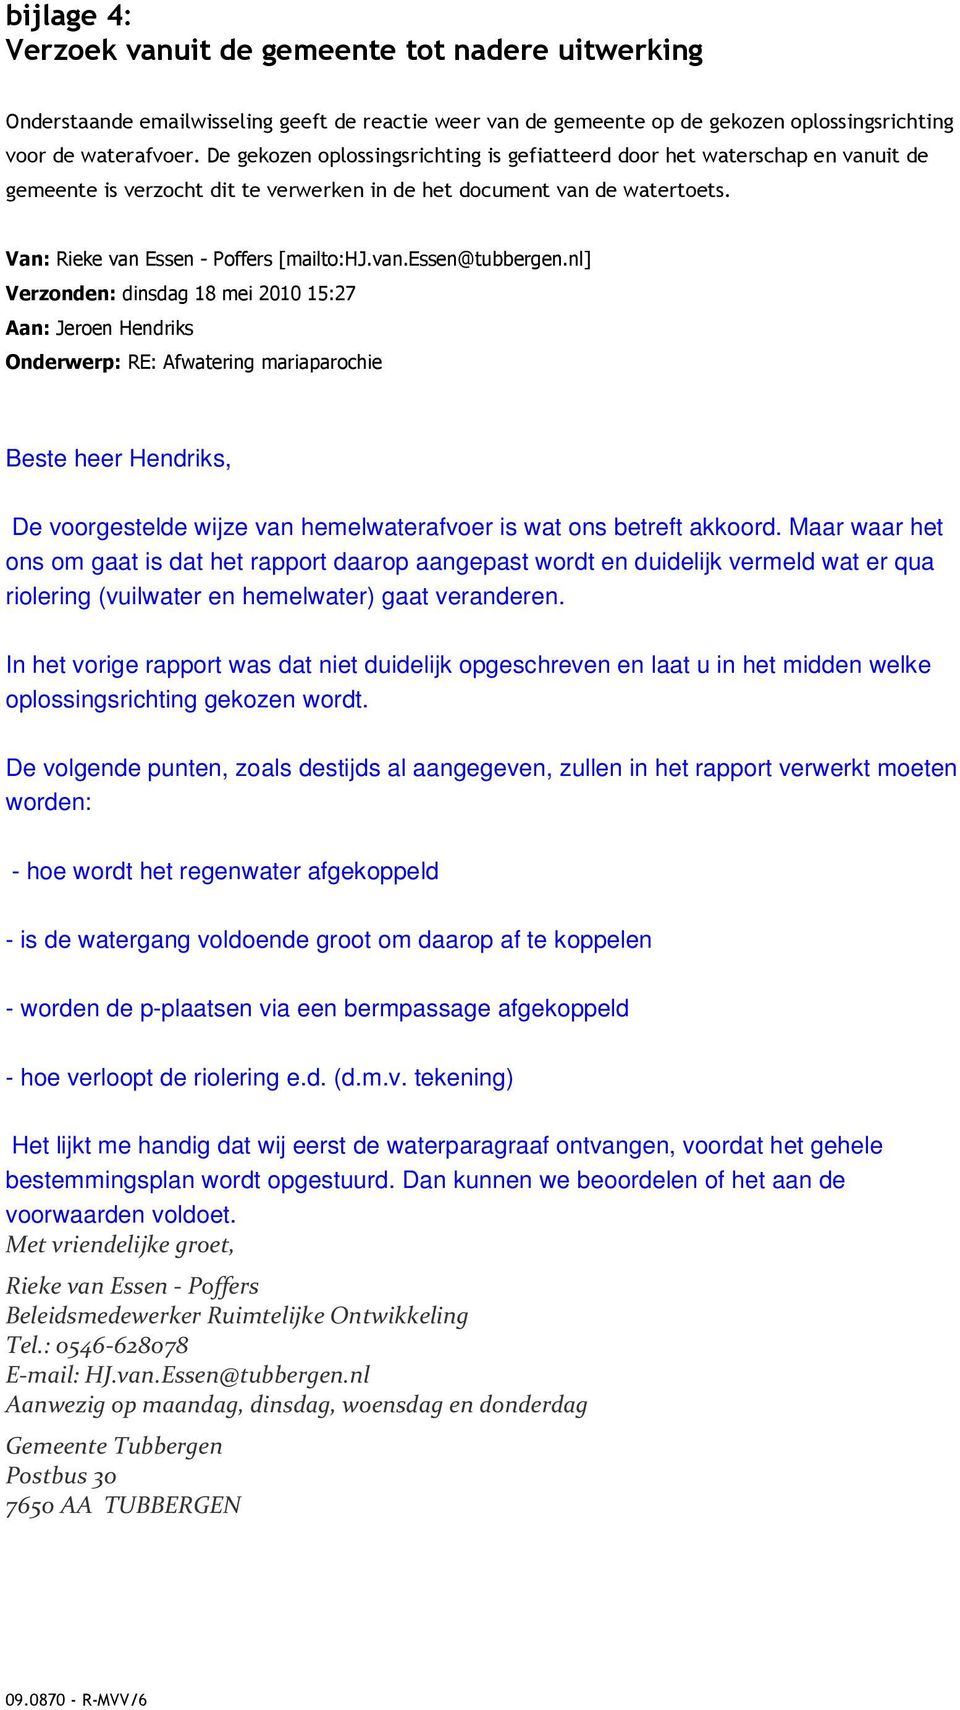 nl] Verzonden: dinsdag 18 mei 2010 15:27 Aan: Jeroen Hendriks Onderwerp: RE: Afwatering mariaparochie Beste heer Hendriks, De voorgestelde wijze van hemelwaterafvoer is wat ons betreft akkoord.